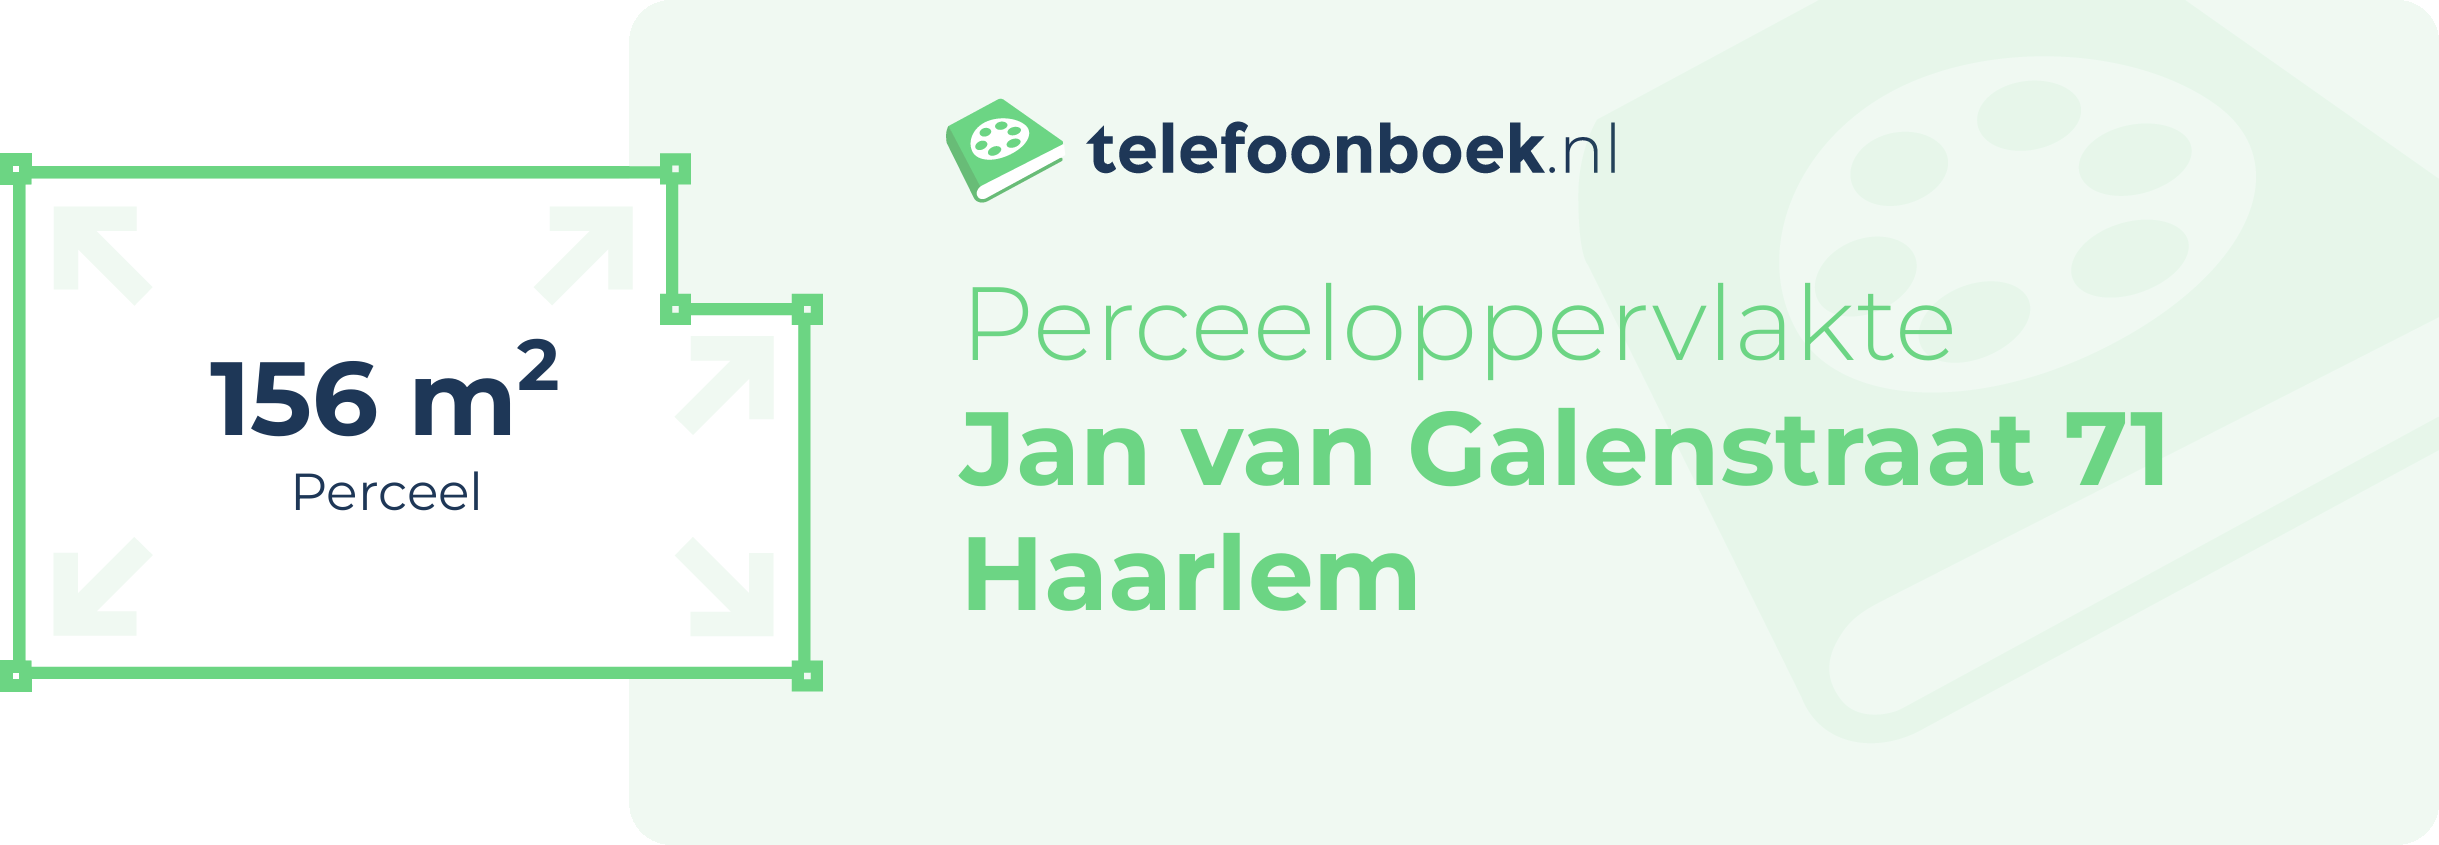 Perceeloppervlakte Jan Van Galenstraat 71 Haarlem